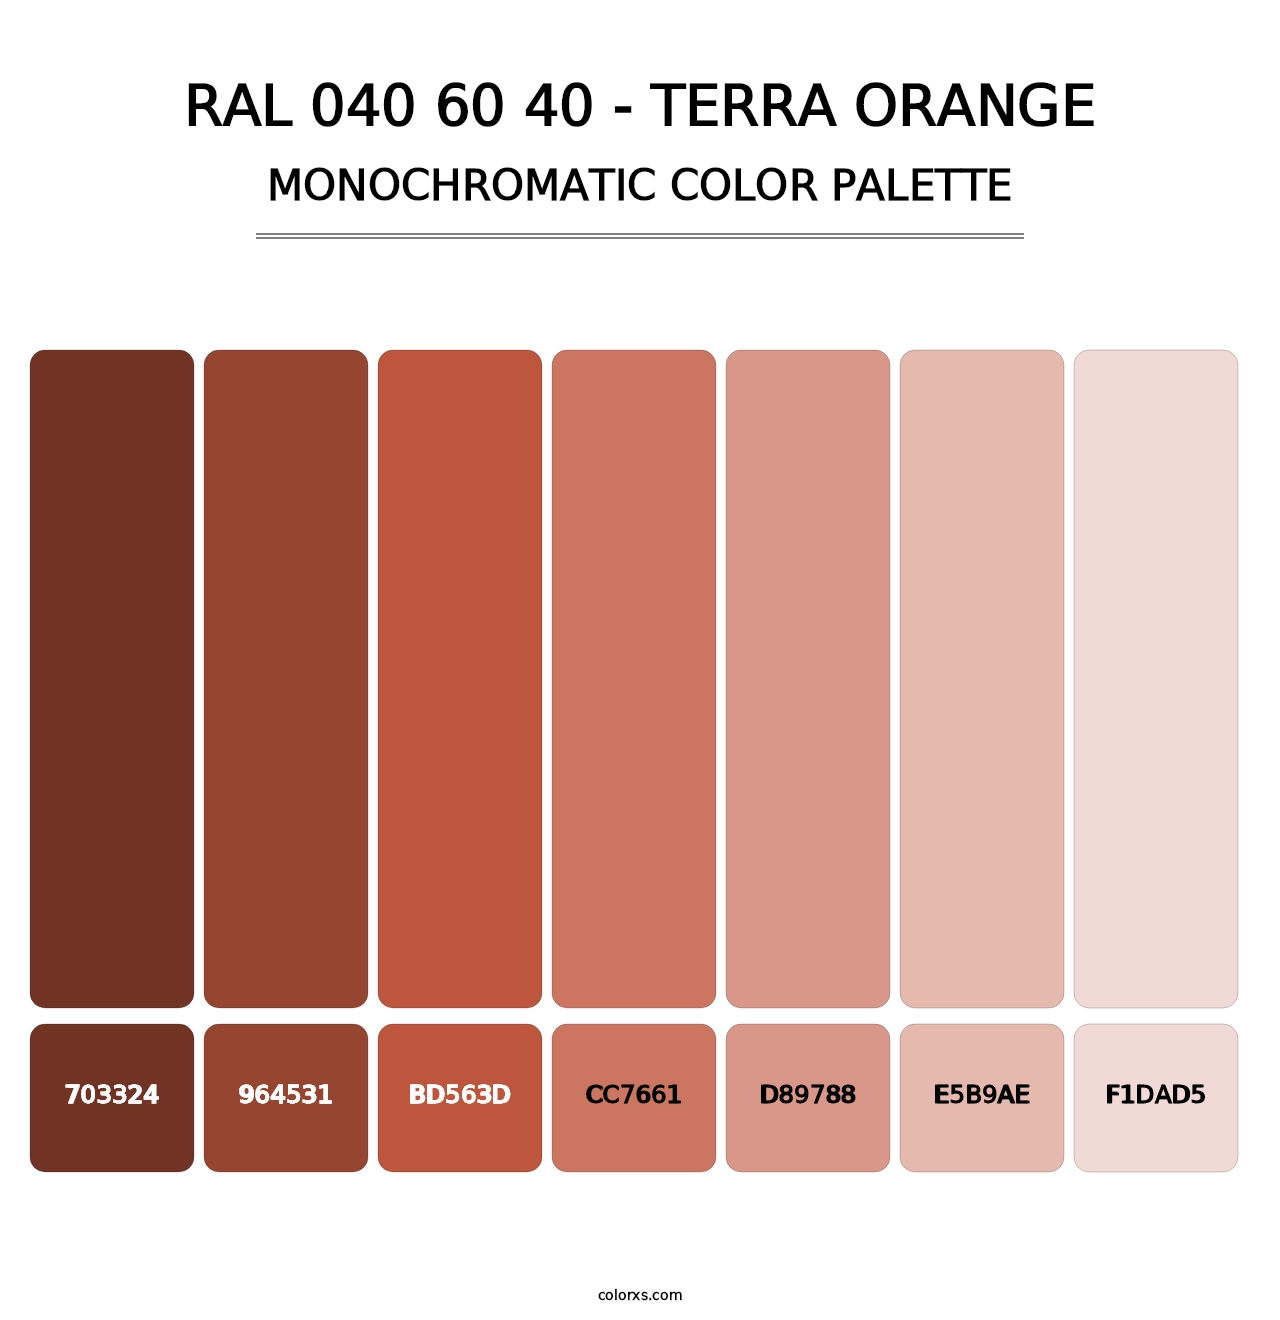 RAL 040 60 40 - Terra Orange - Monochromatic Color Palette